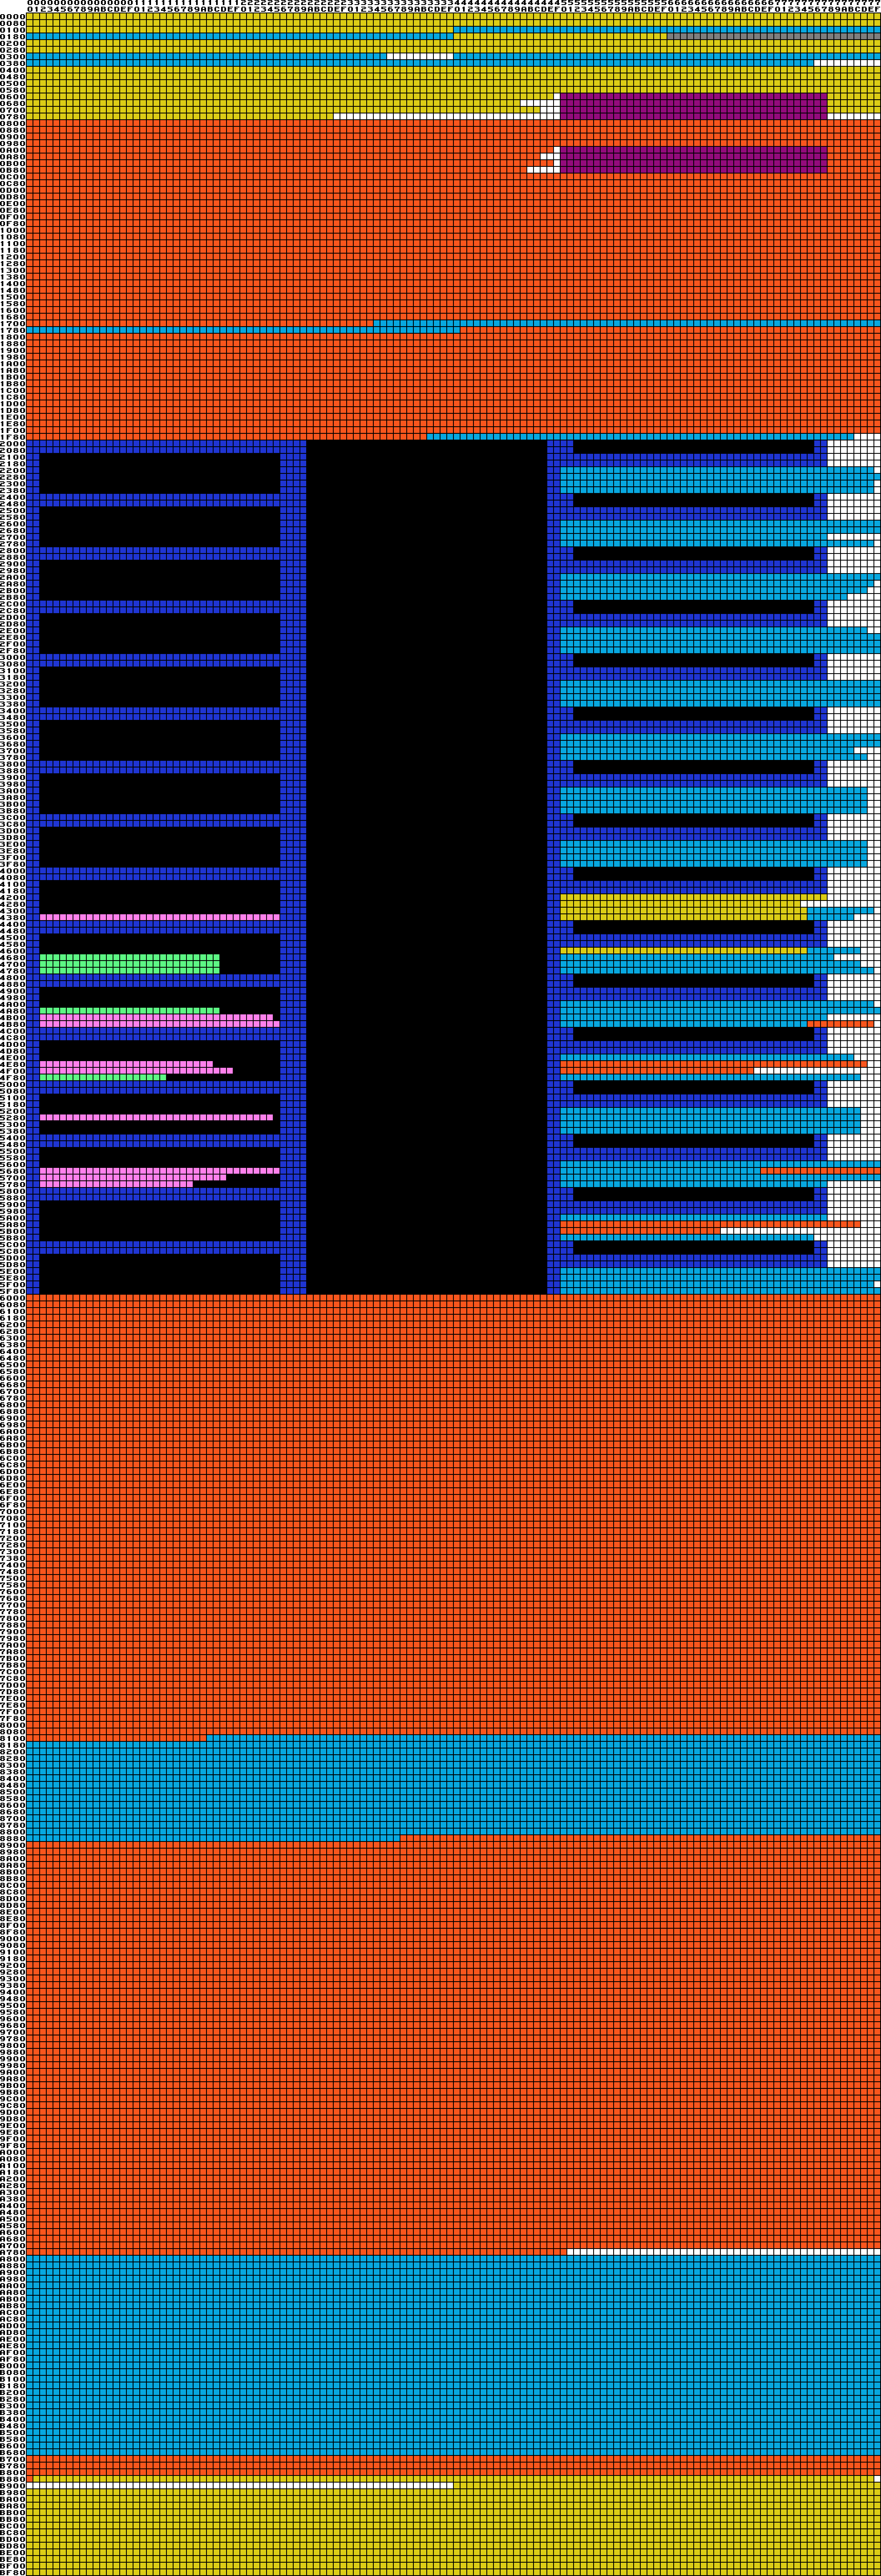 Full memory layout diagram